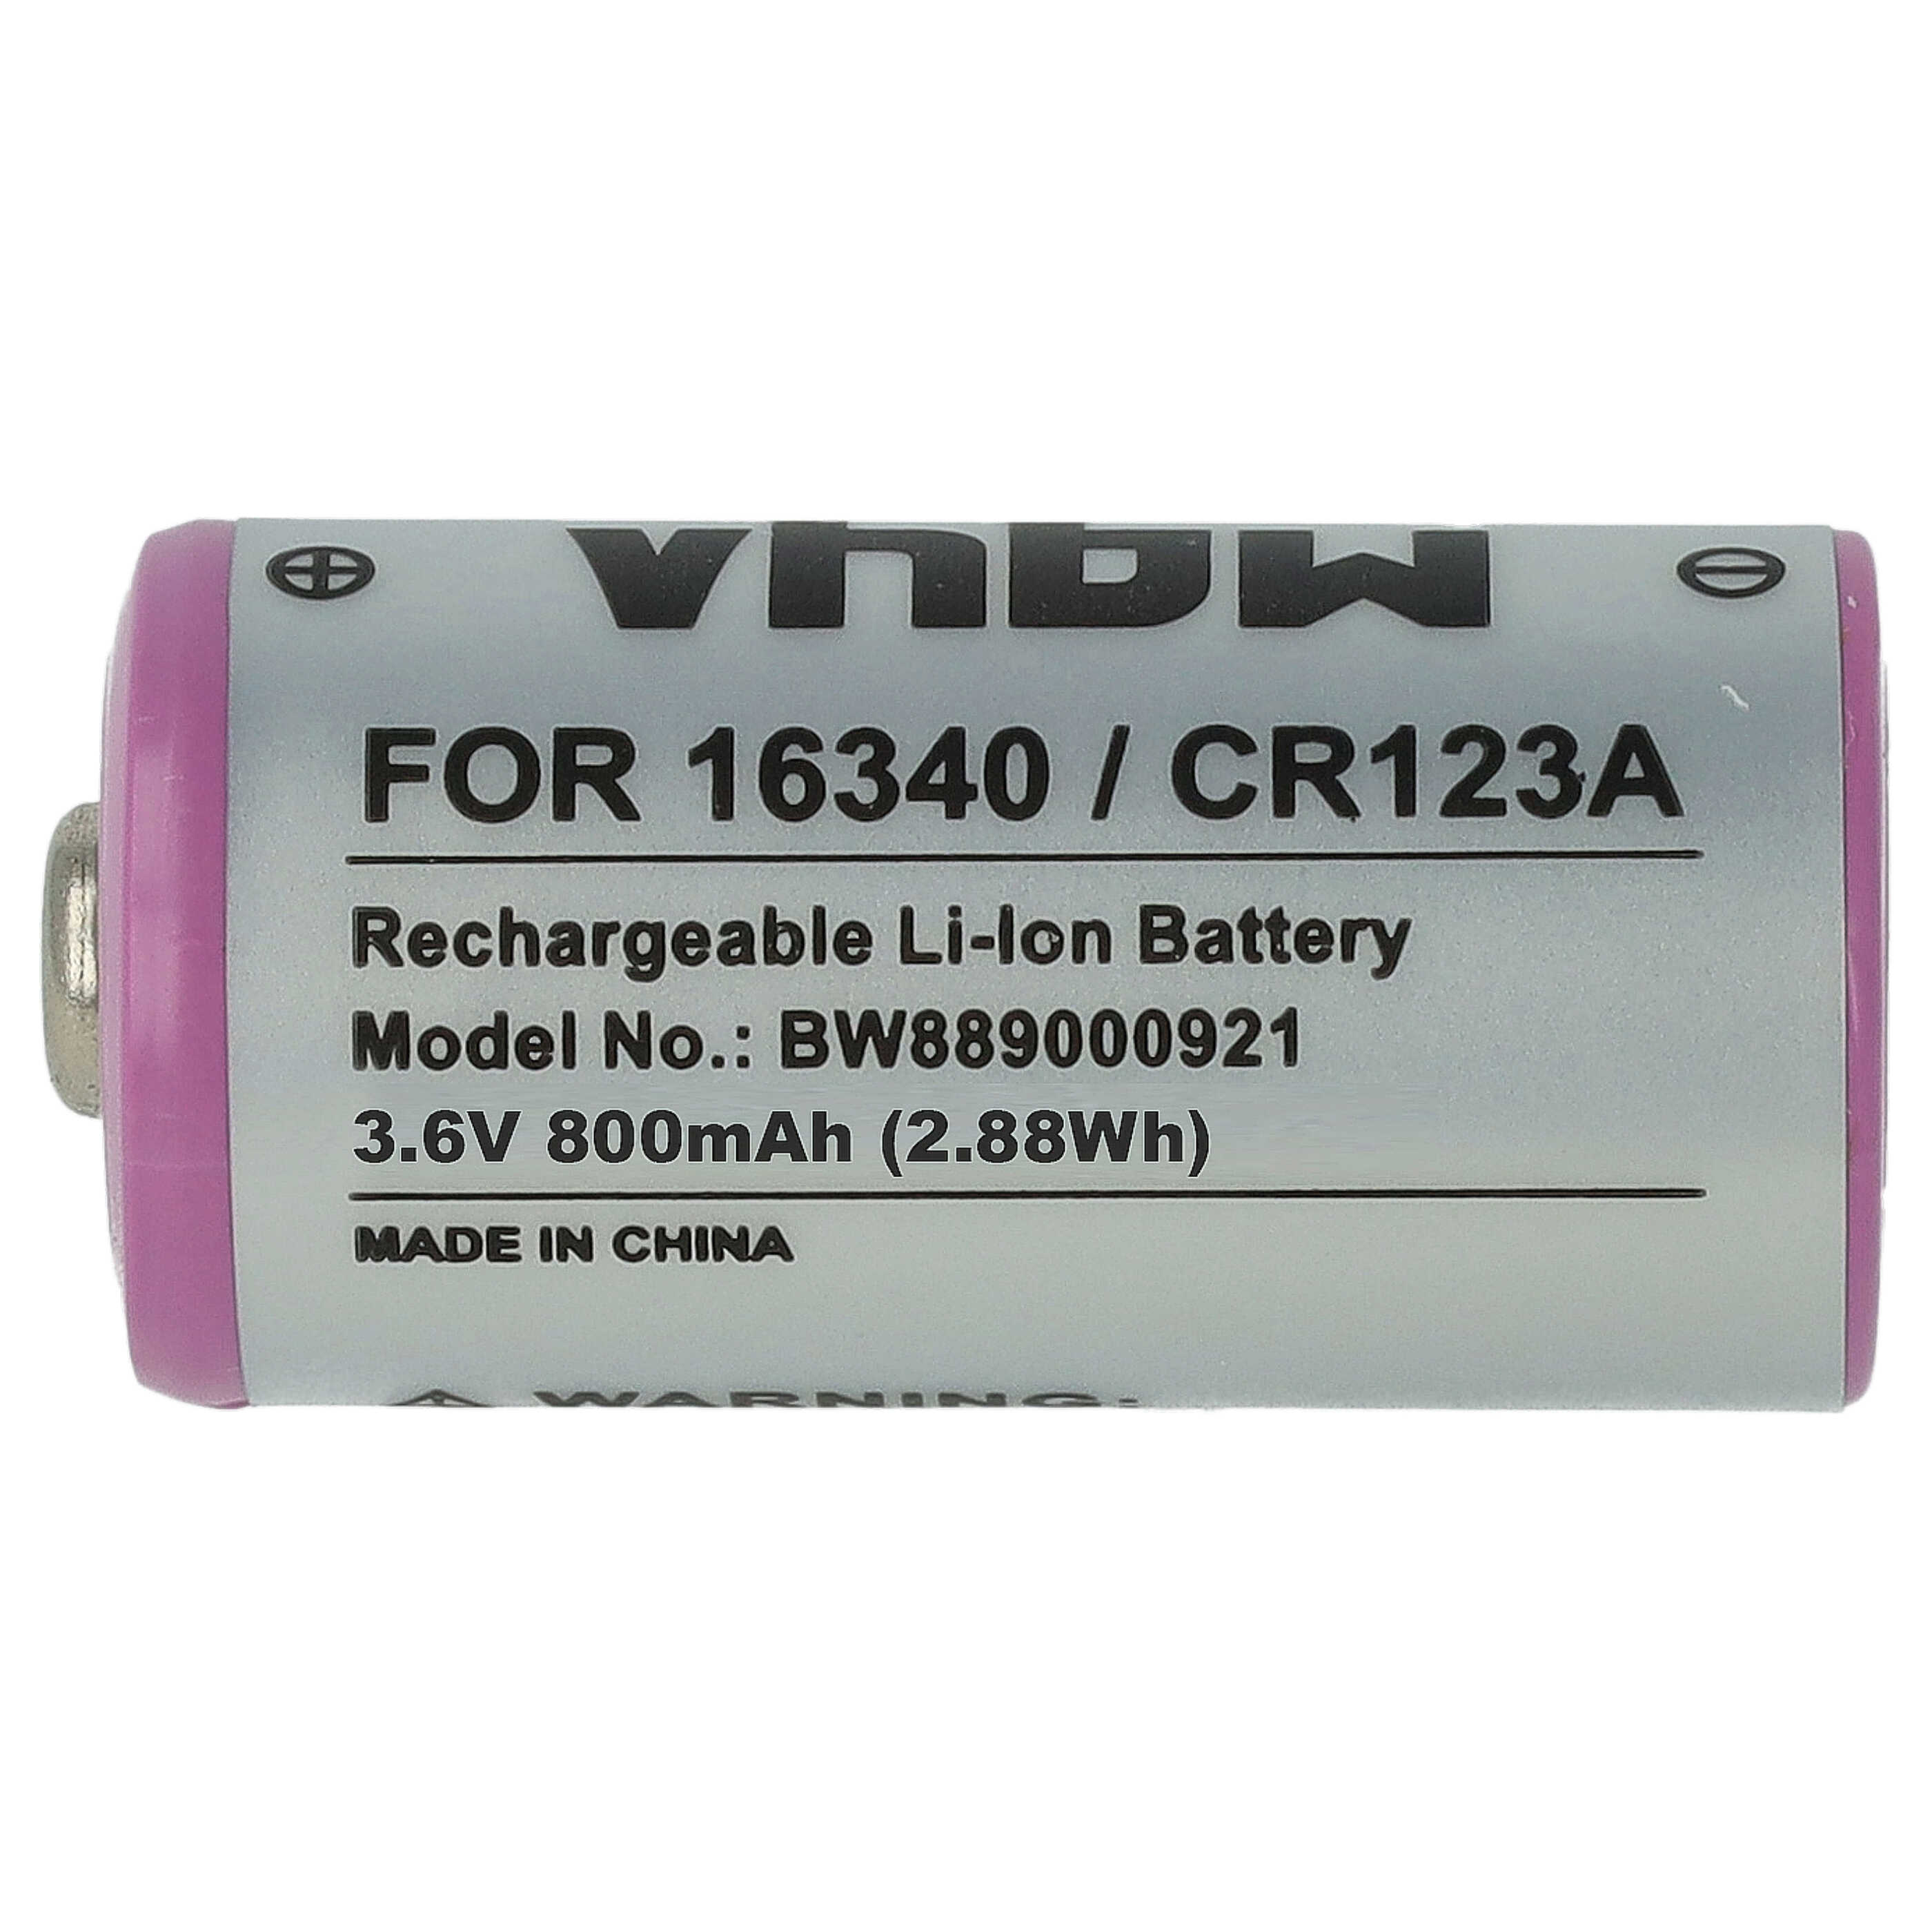 Chargeur double avec 2x batteries CR123A (800 mAh) pour batteries Li-ion Gigaset, , Sommer Motion Sensor One X